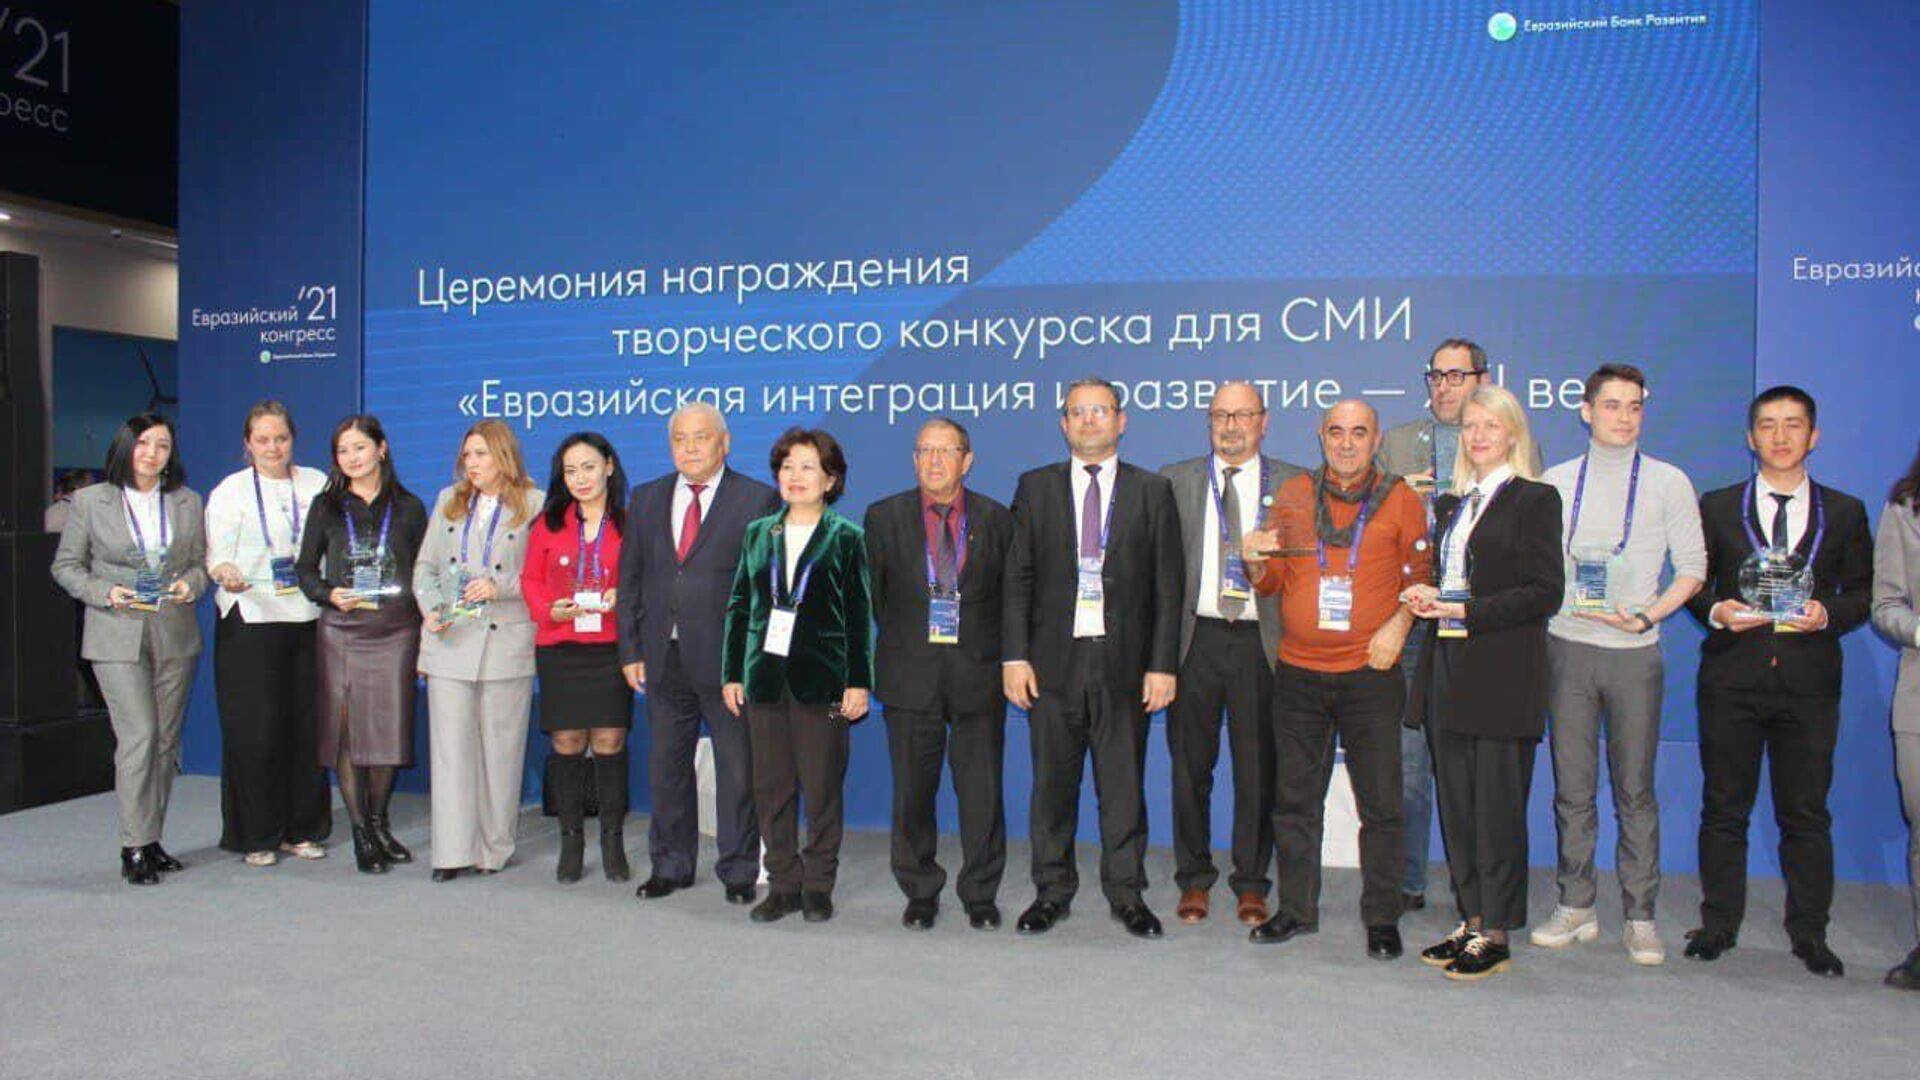 Участники творческого конкурса для СМИ II Евразийского конгресса - Sputnik Таджикистан, 1920, 04.12.2021